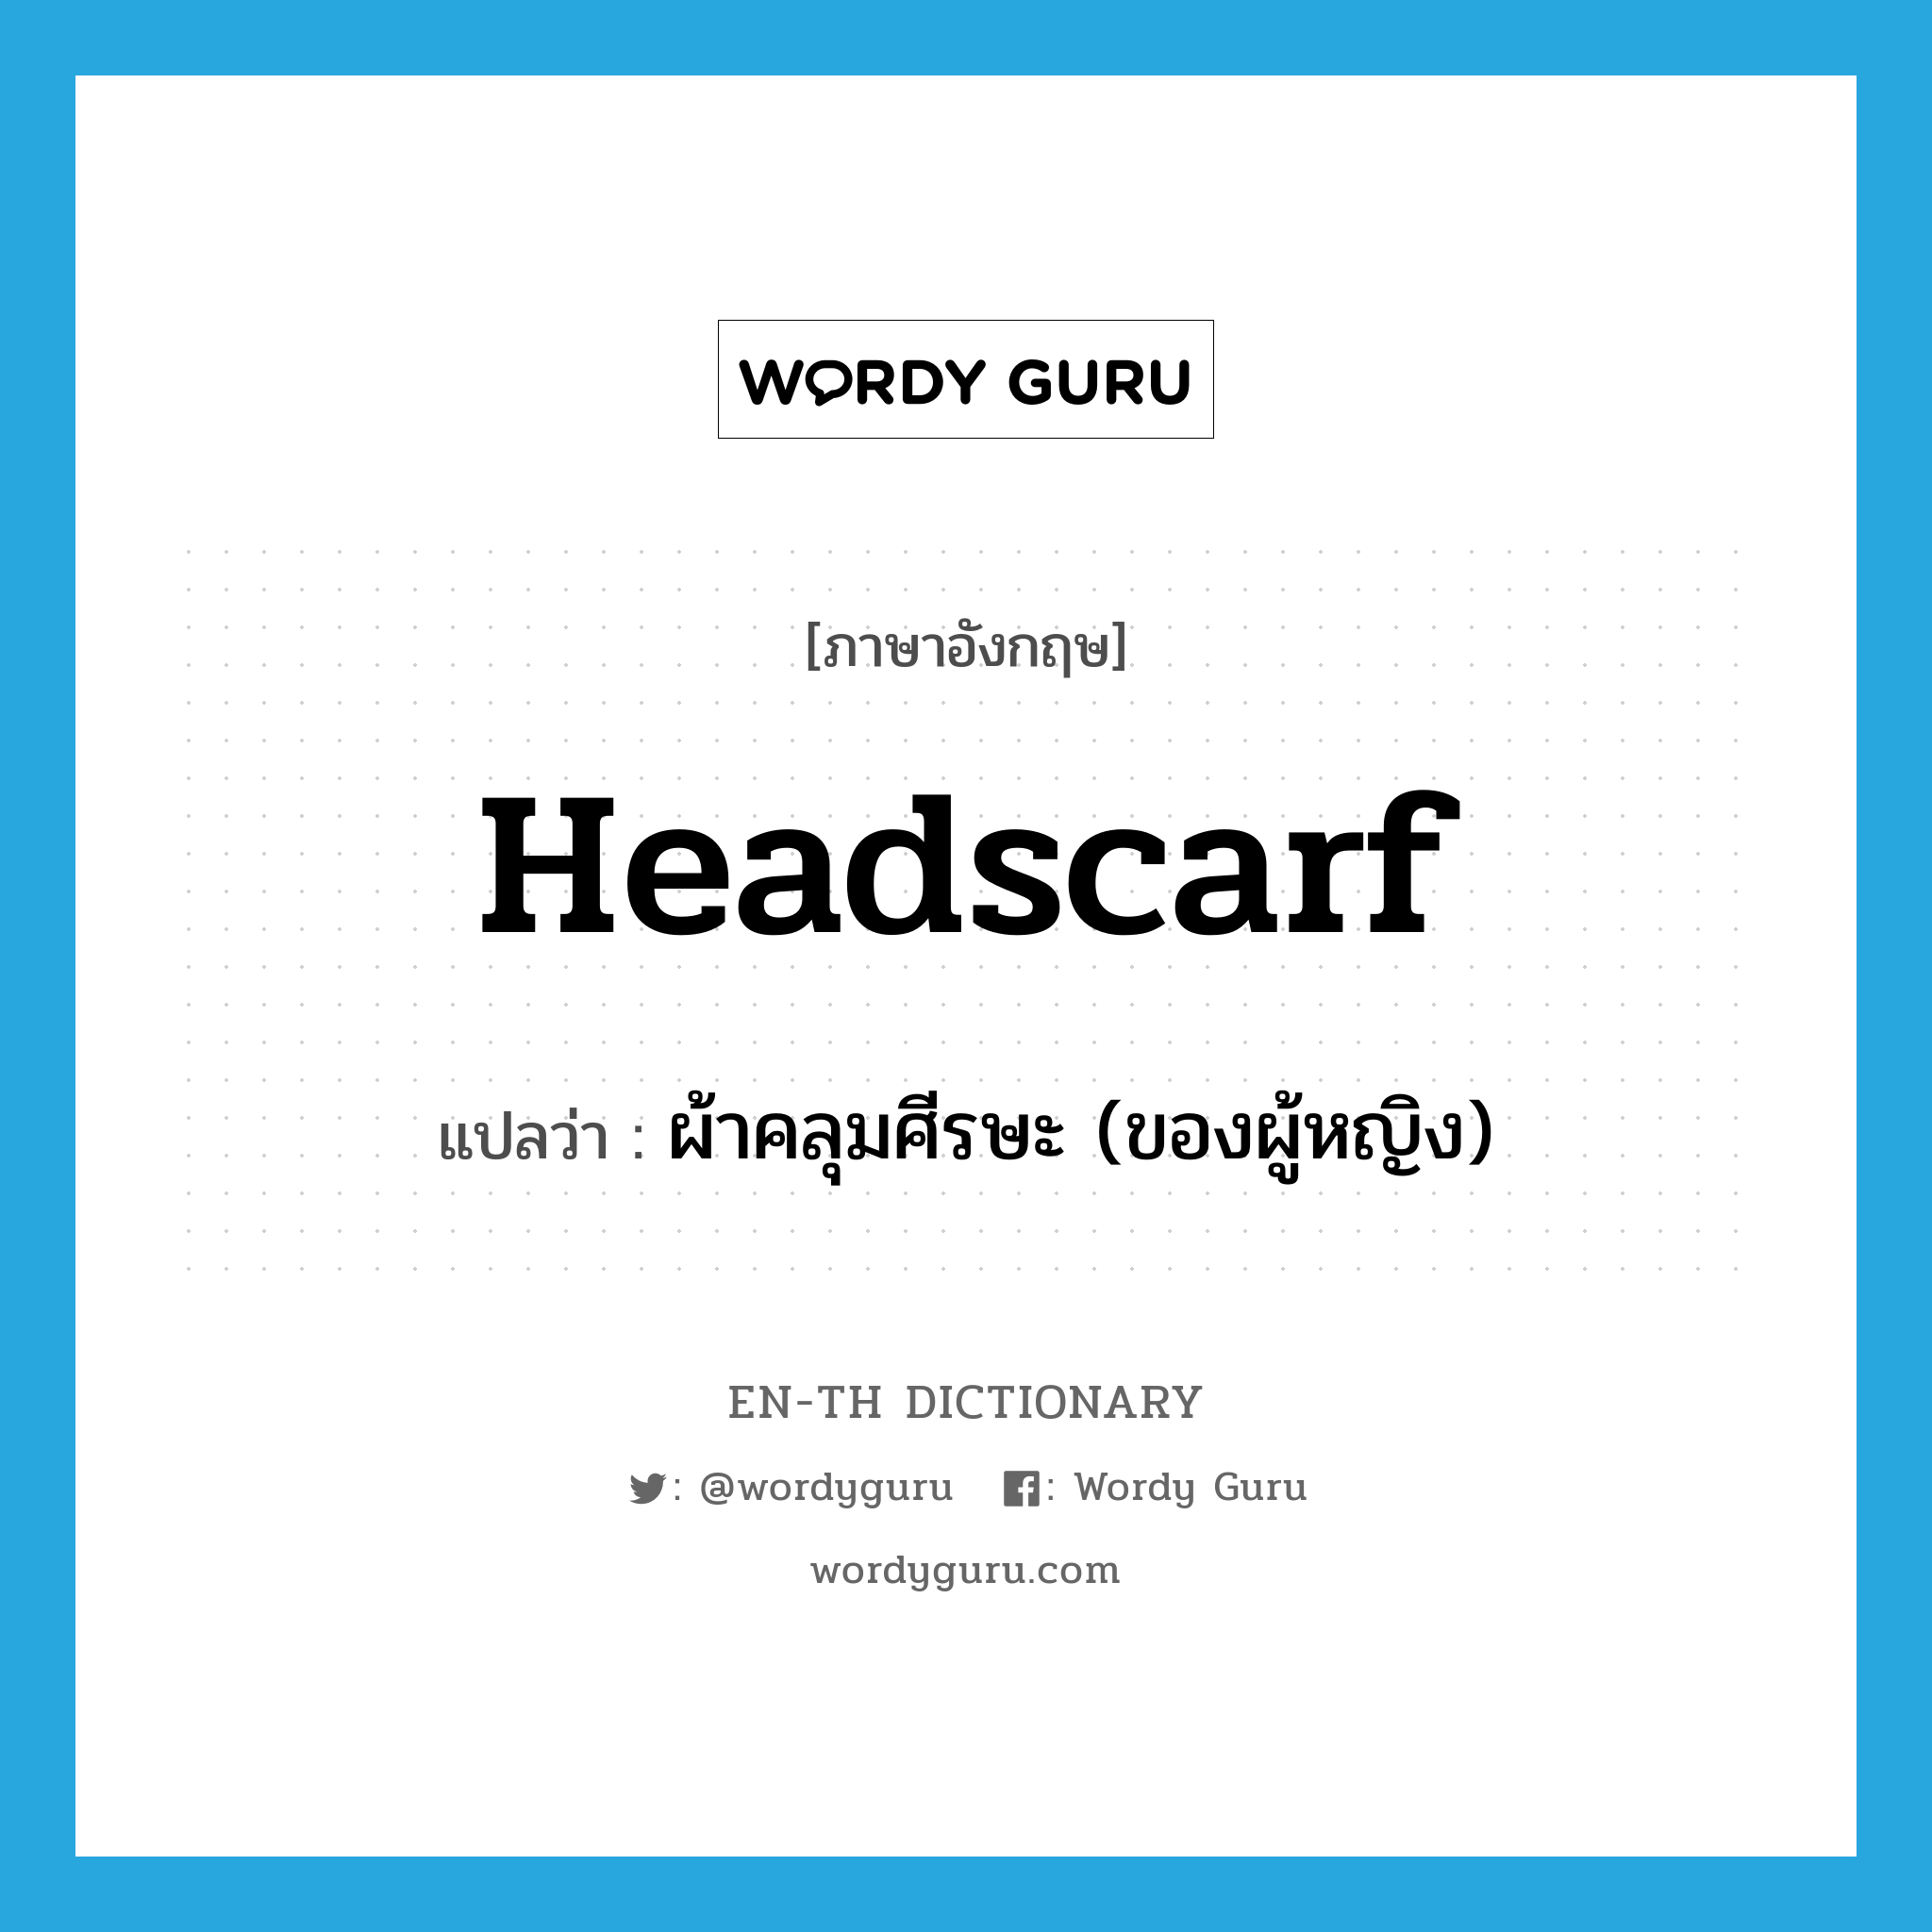 headscarf แปลว่า?, คำศัพท์ภาษาอังกฤษ headscarf แปลว่า ผ้าคลุมศีรษะ (ของผู้หญิง) ประเภท N หมวด N